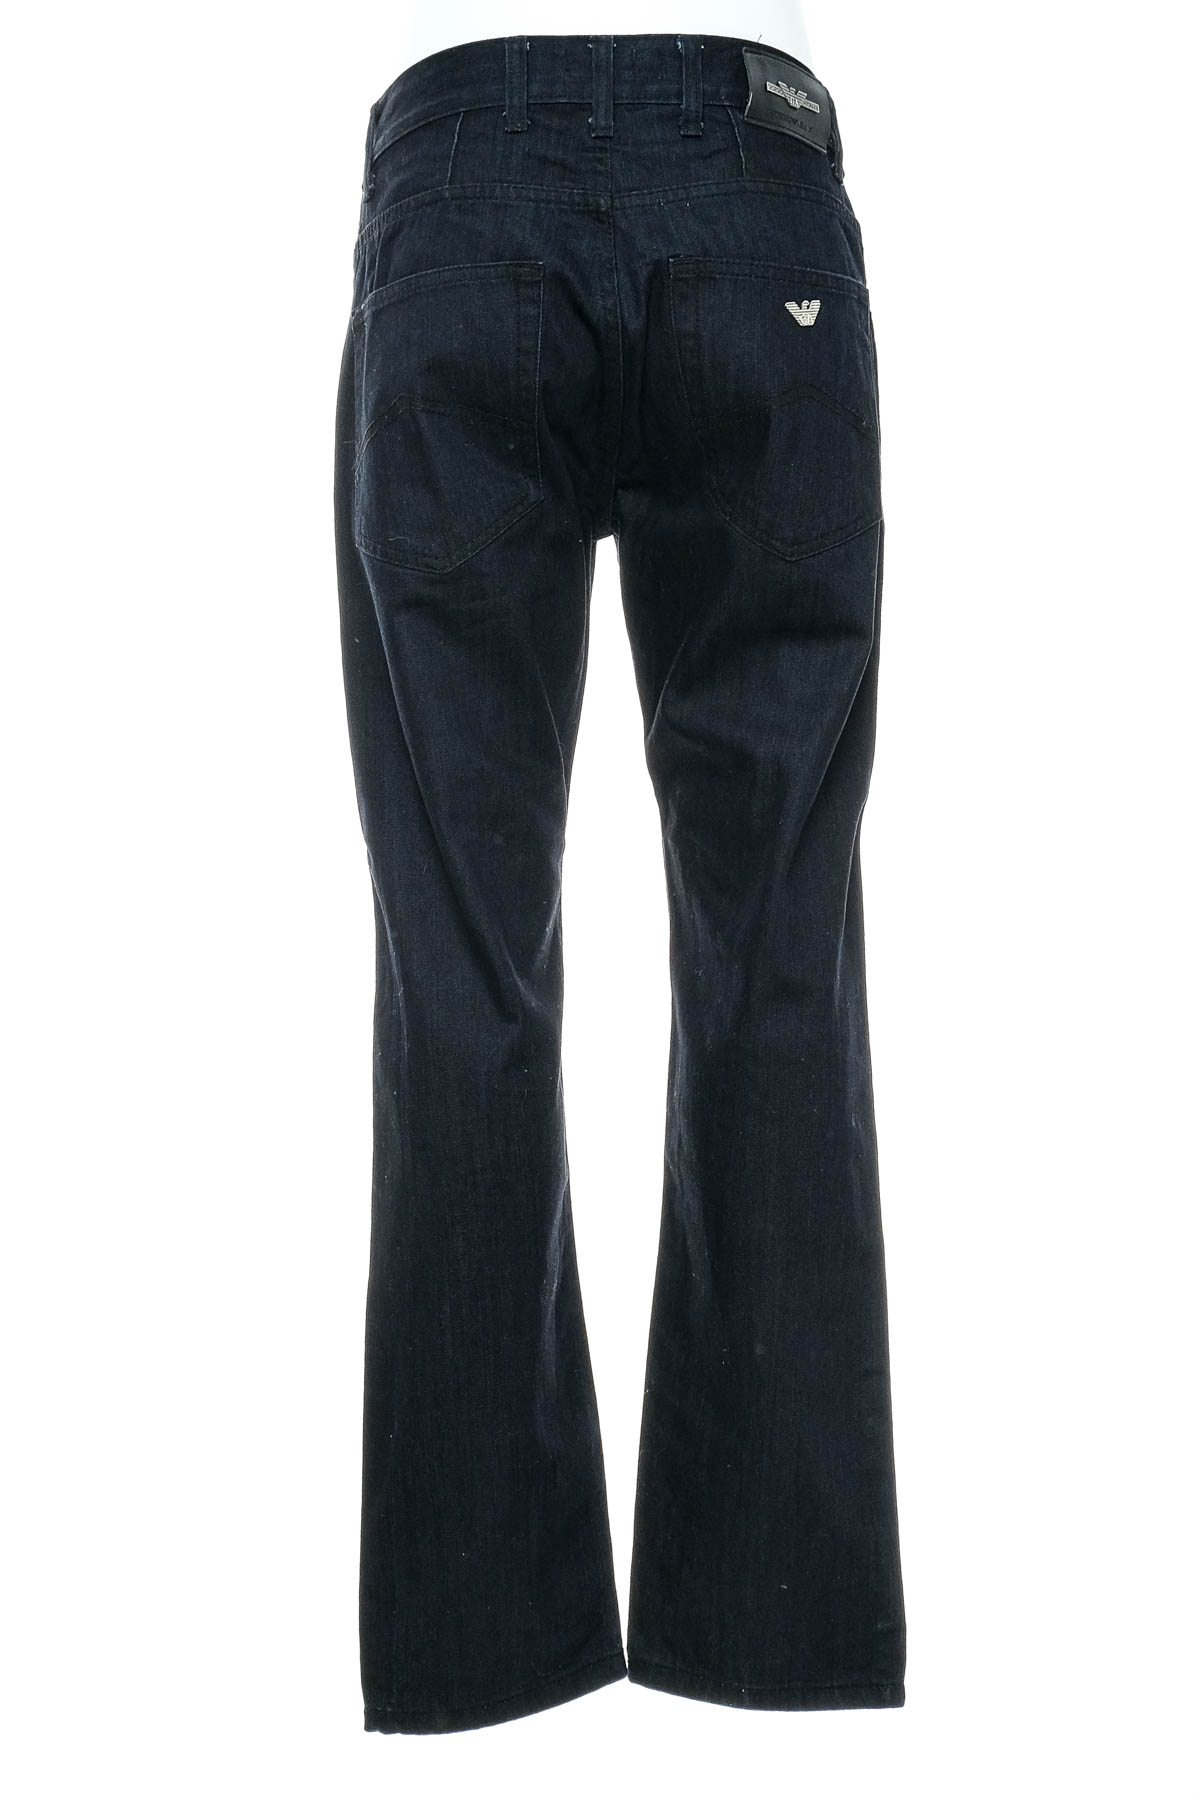 Ανδρικά τζιν - Armani Jeans - 1